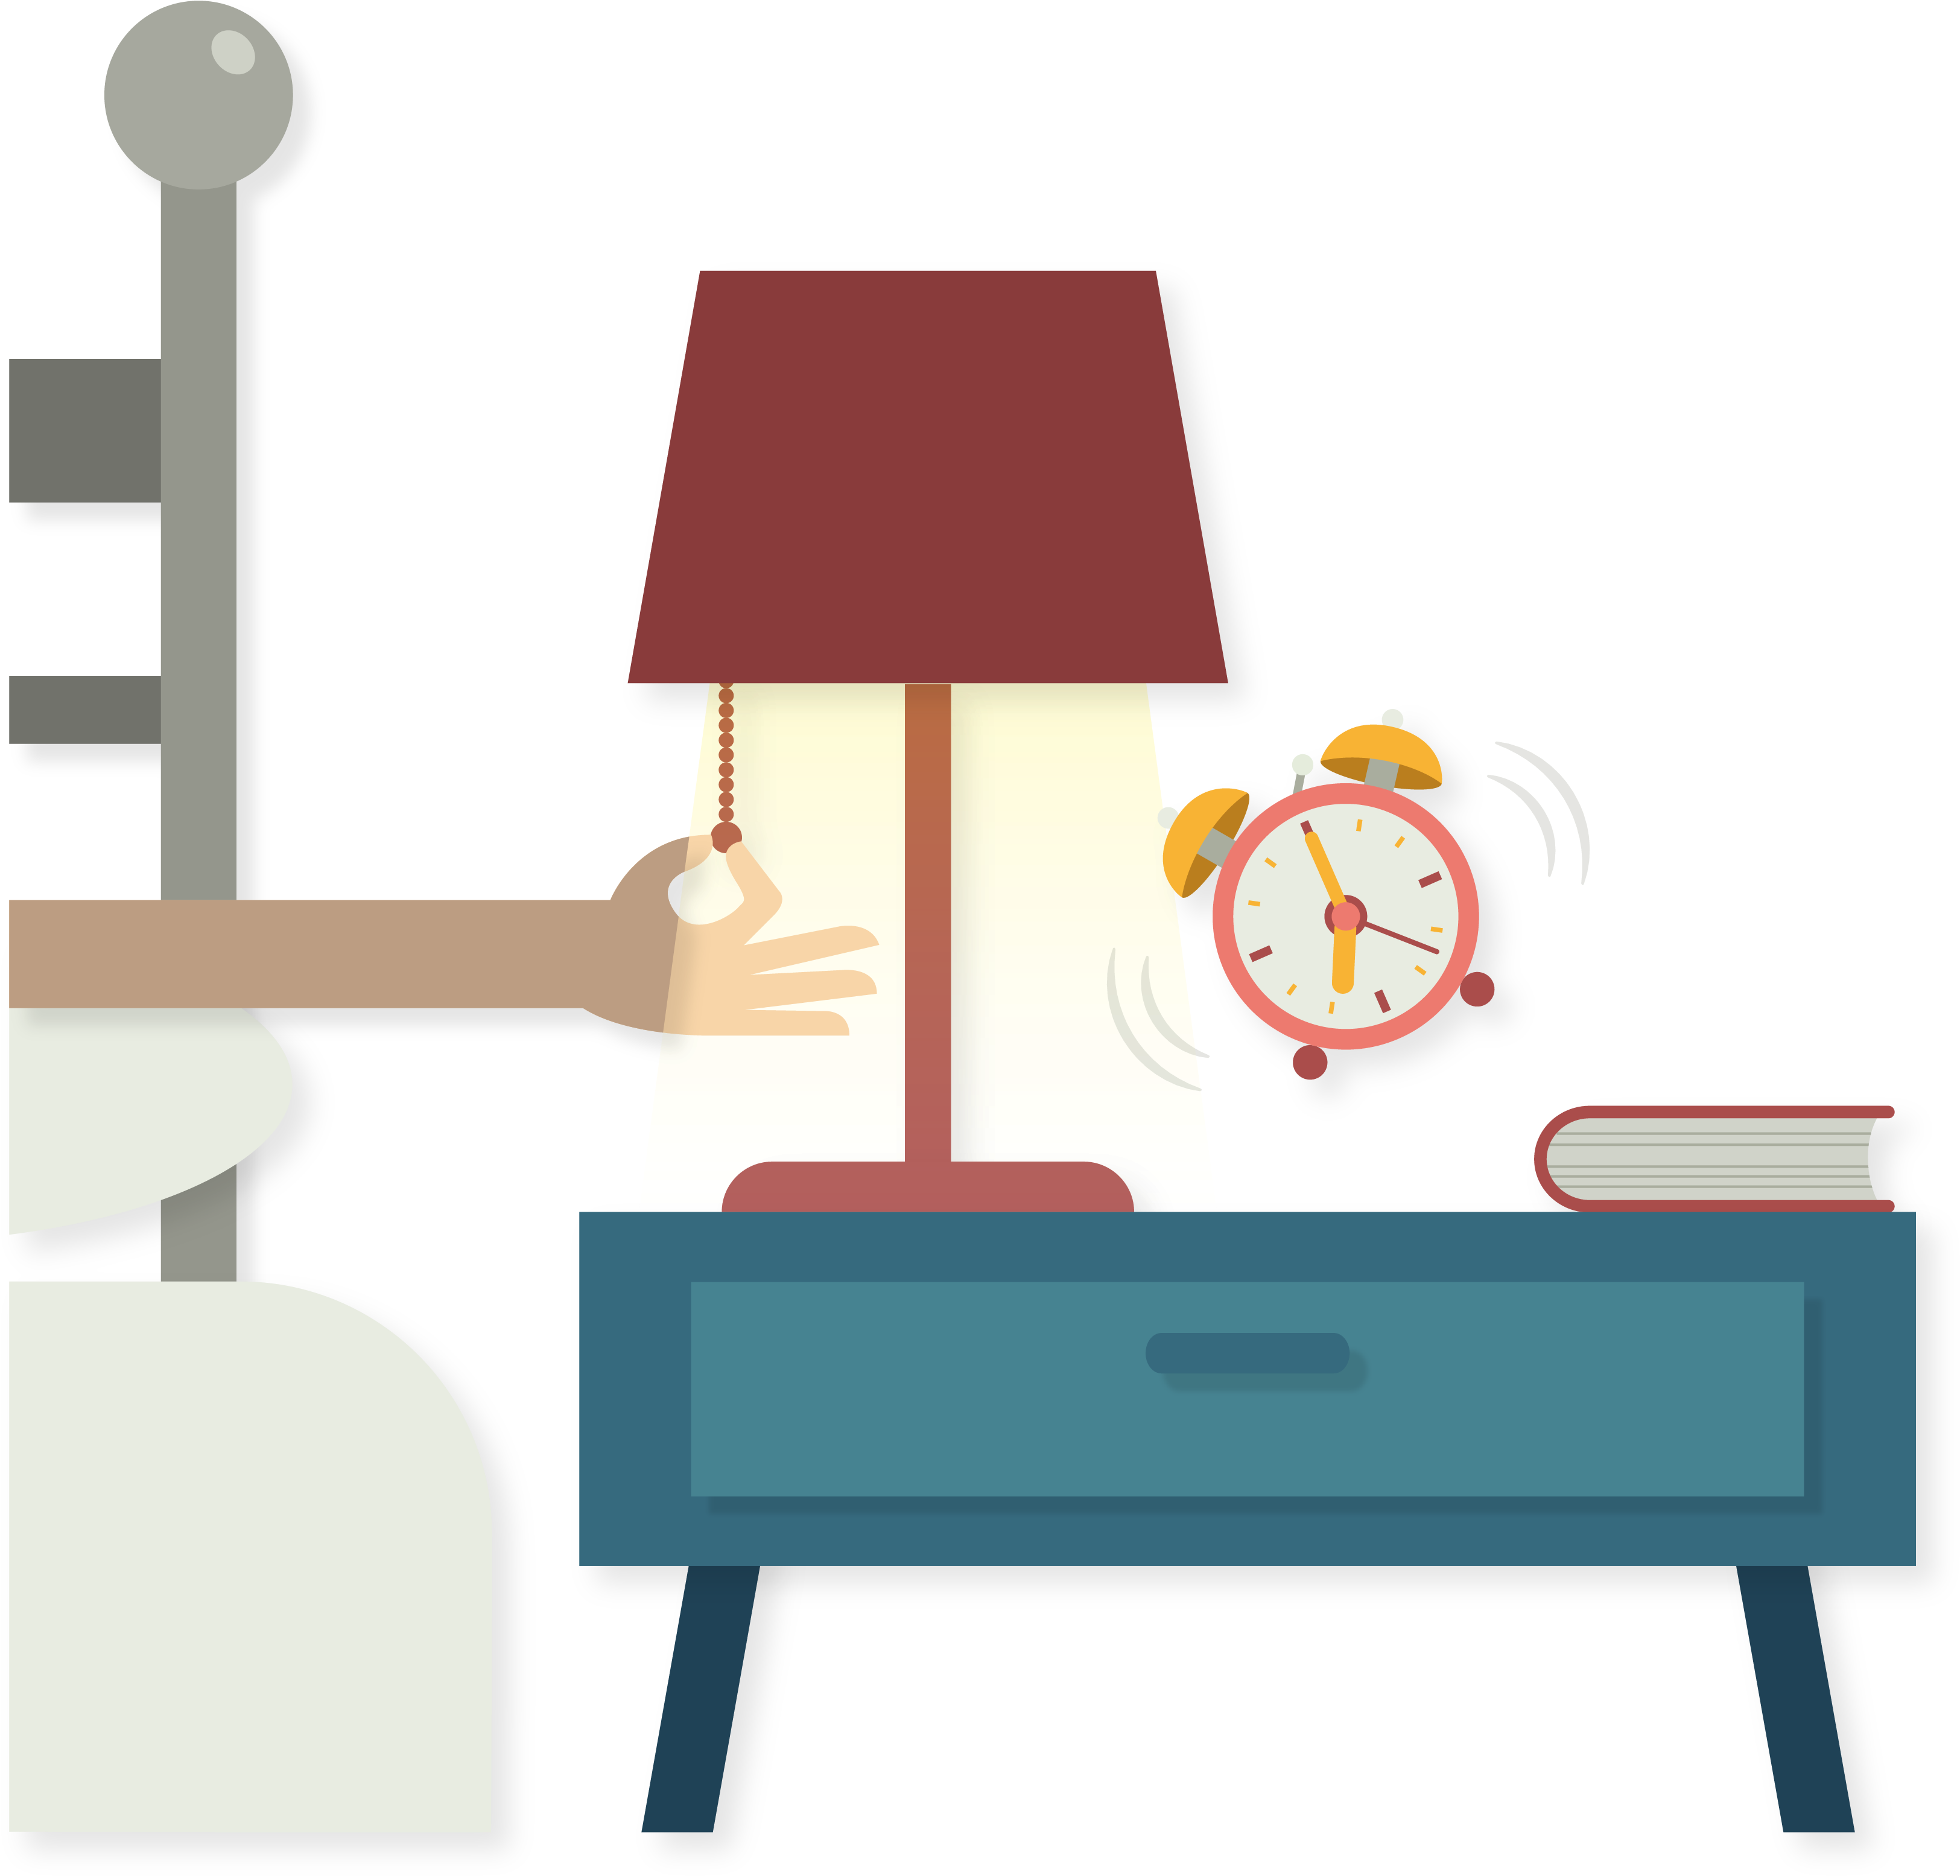 Light Lamp Alarm Clock - Light Lamp Alarm Clock (3286x3136)